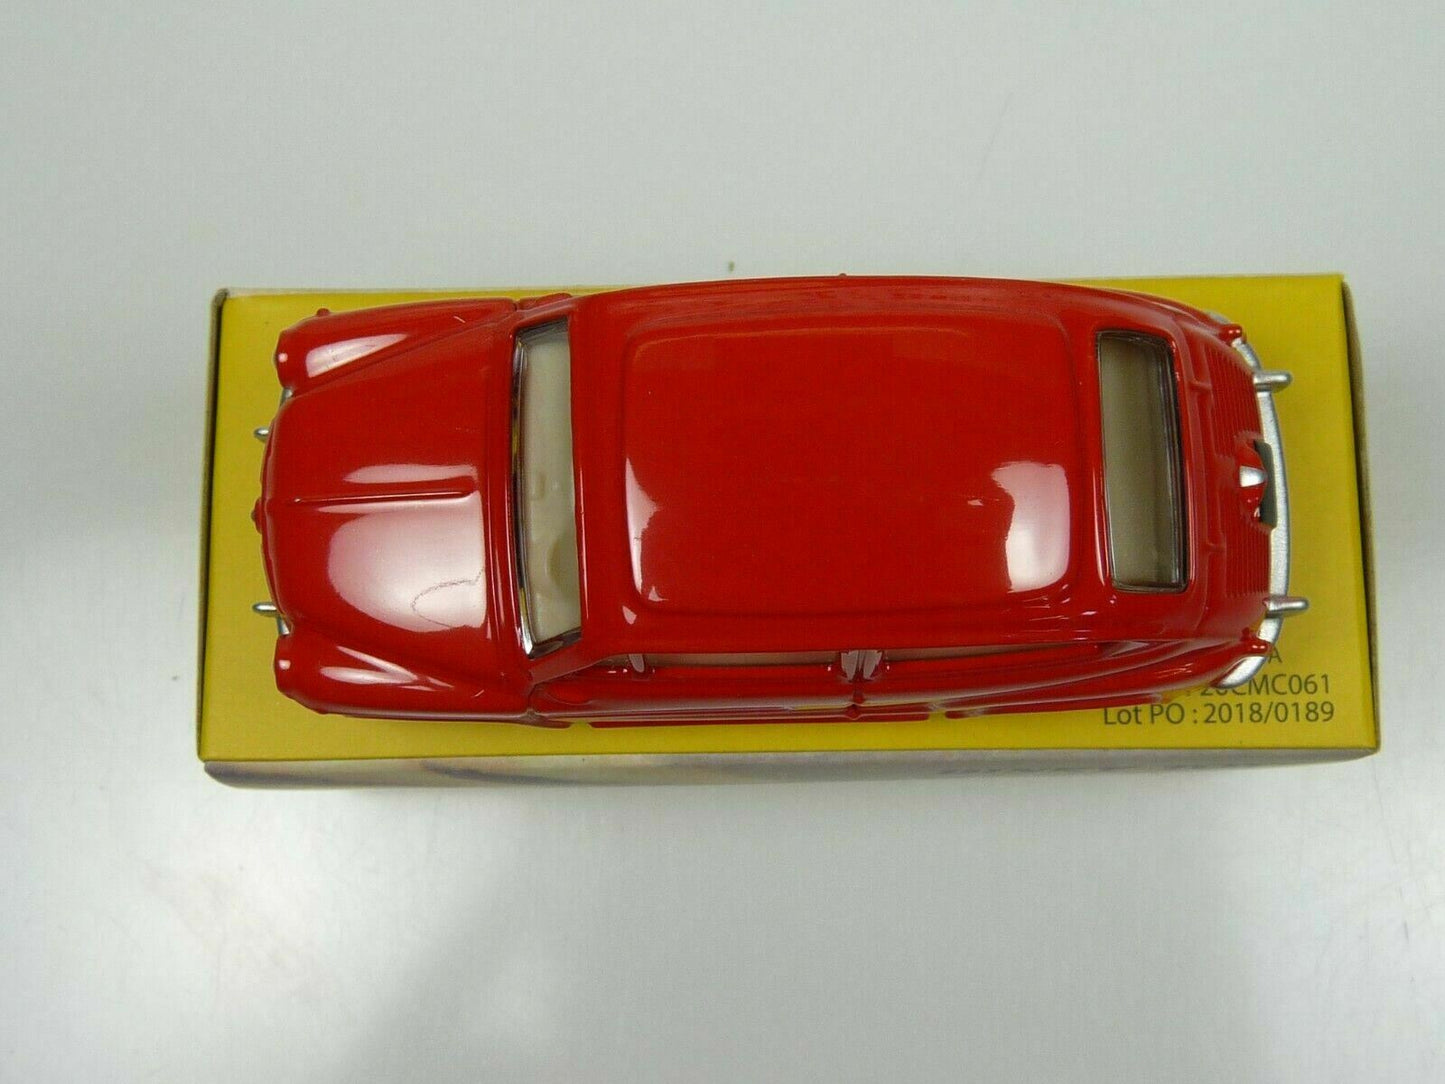 DT261 1/43 réédition DINKY TOYS DeAgostini : FIAT 600D rouge